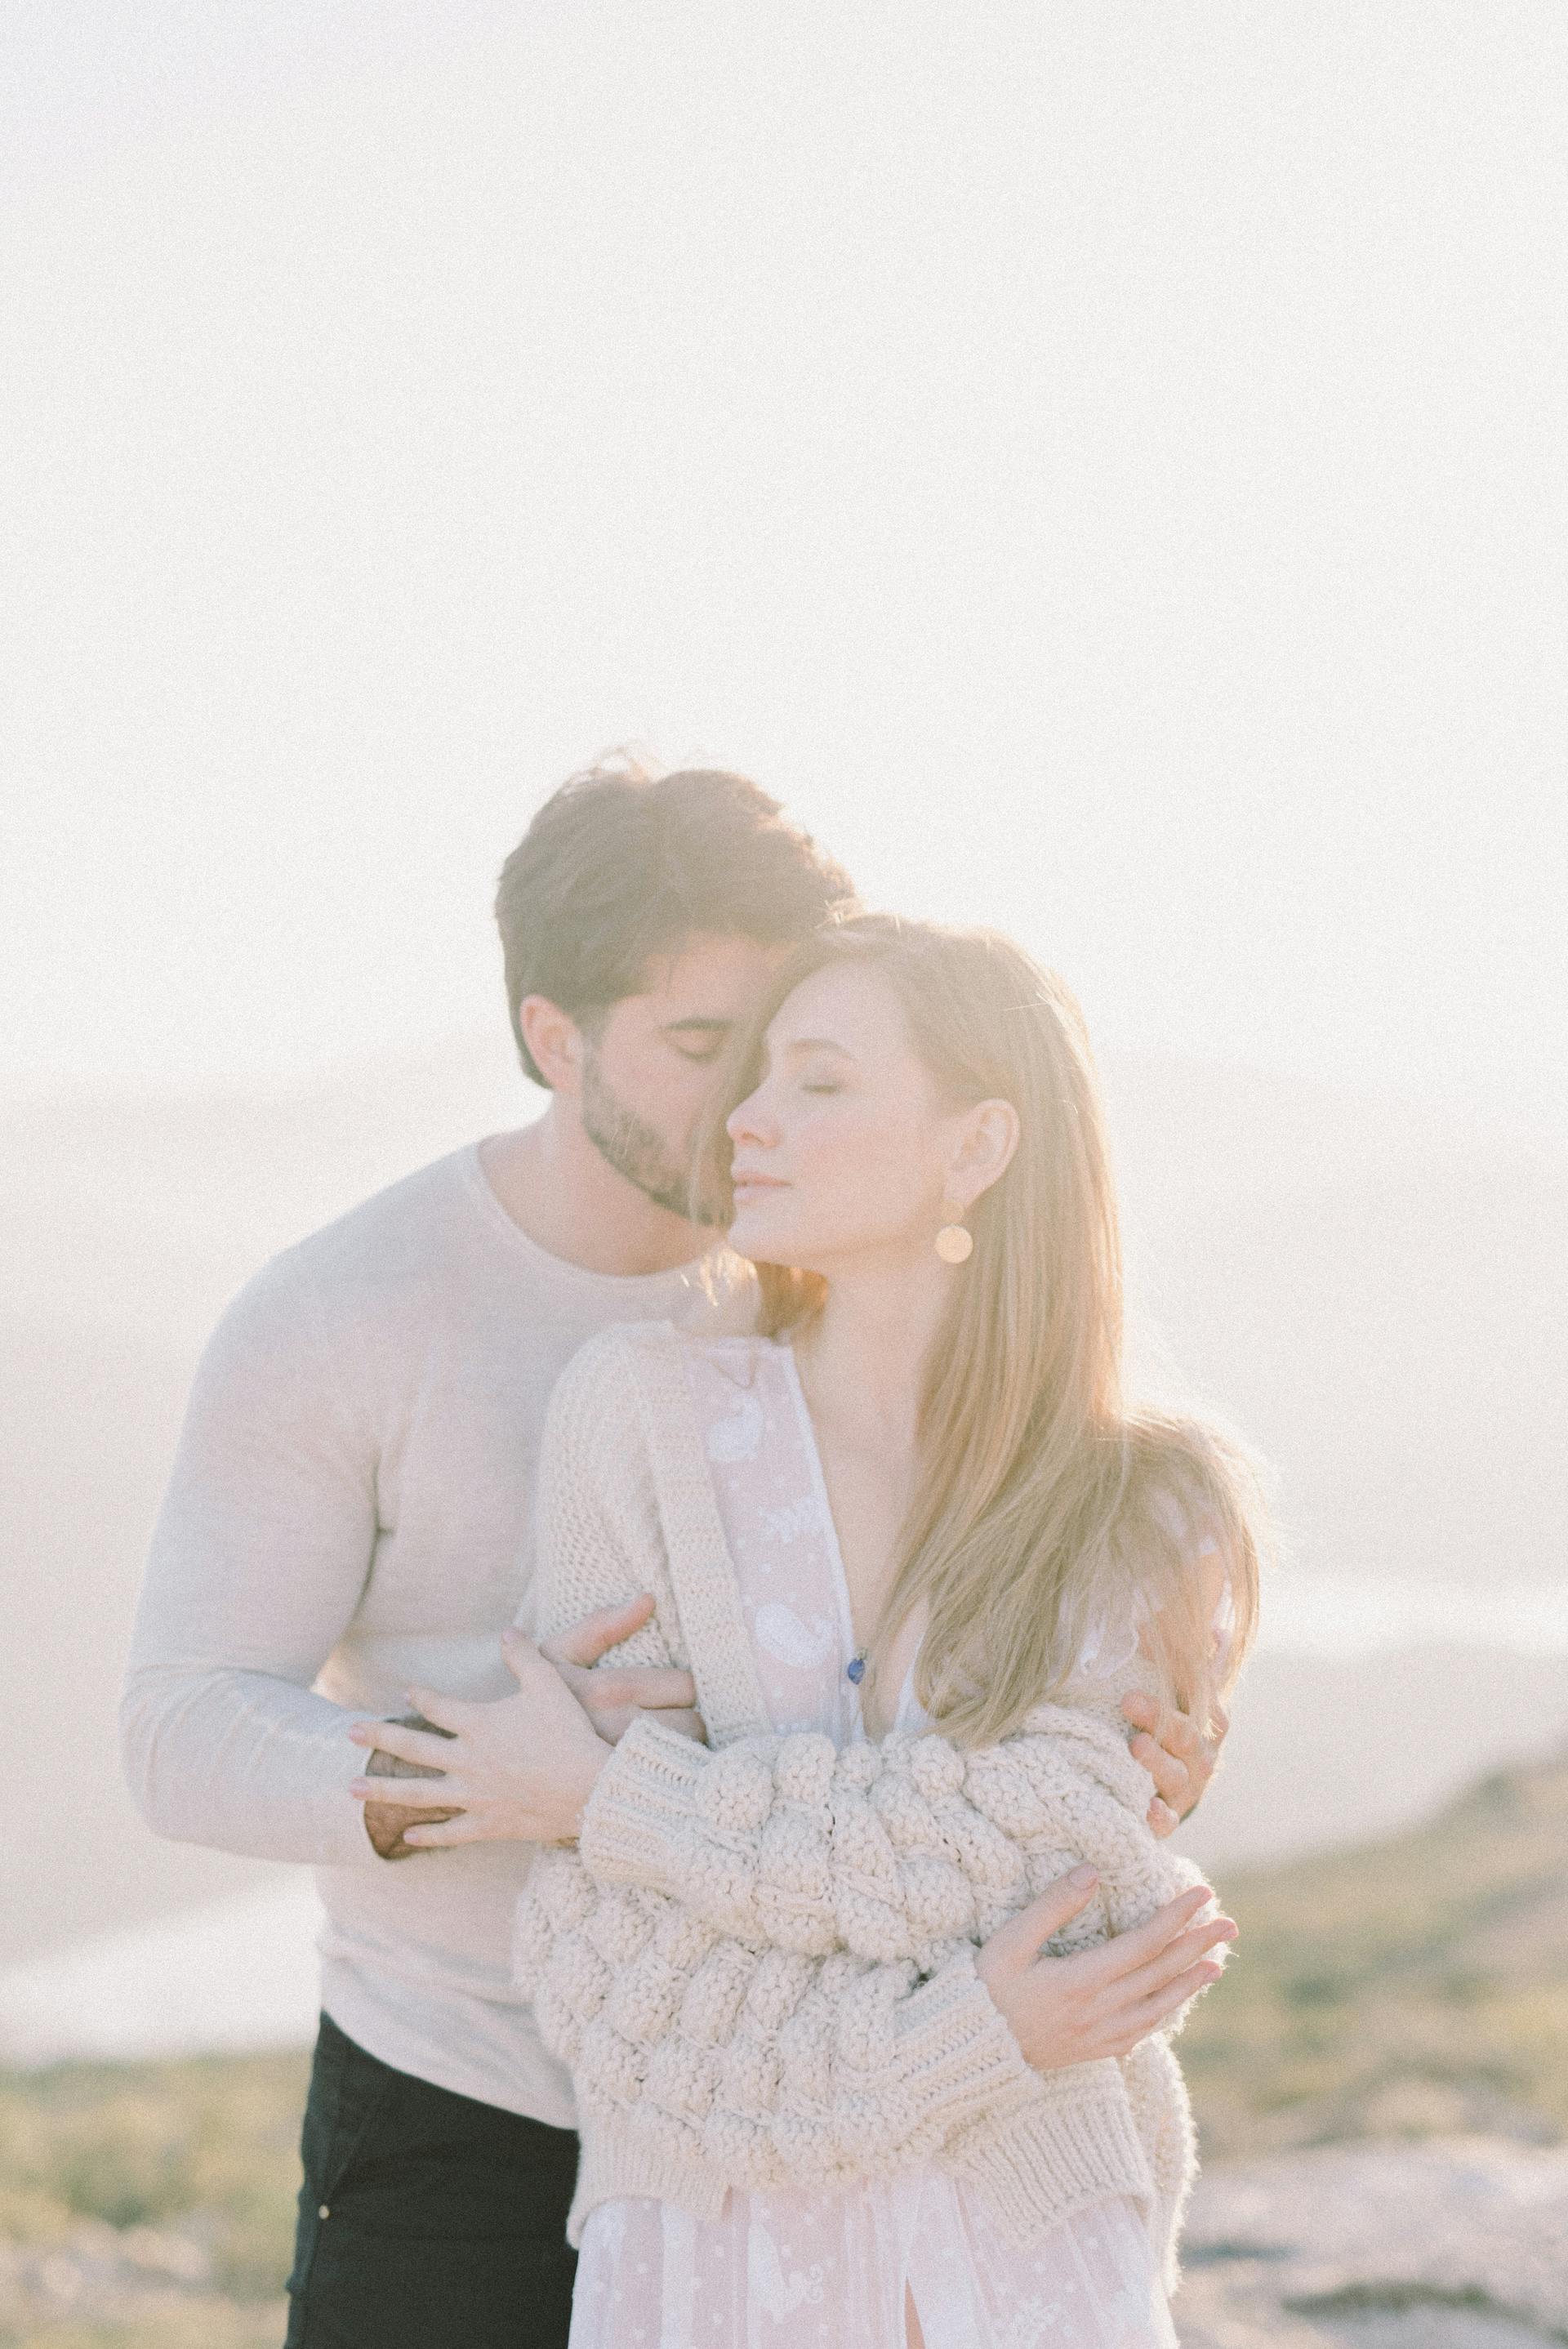 Un mari embrassant sa femme | Source : Pexels